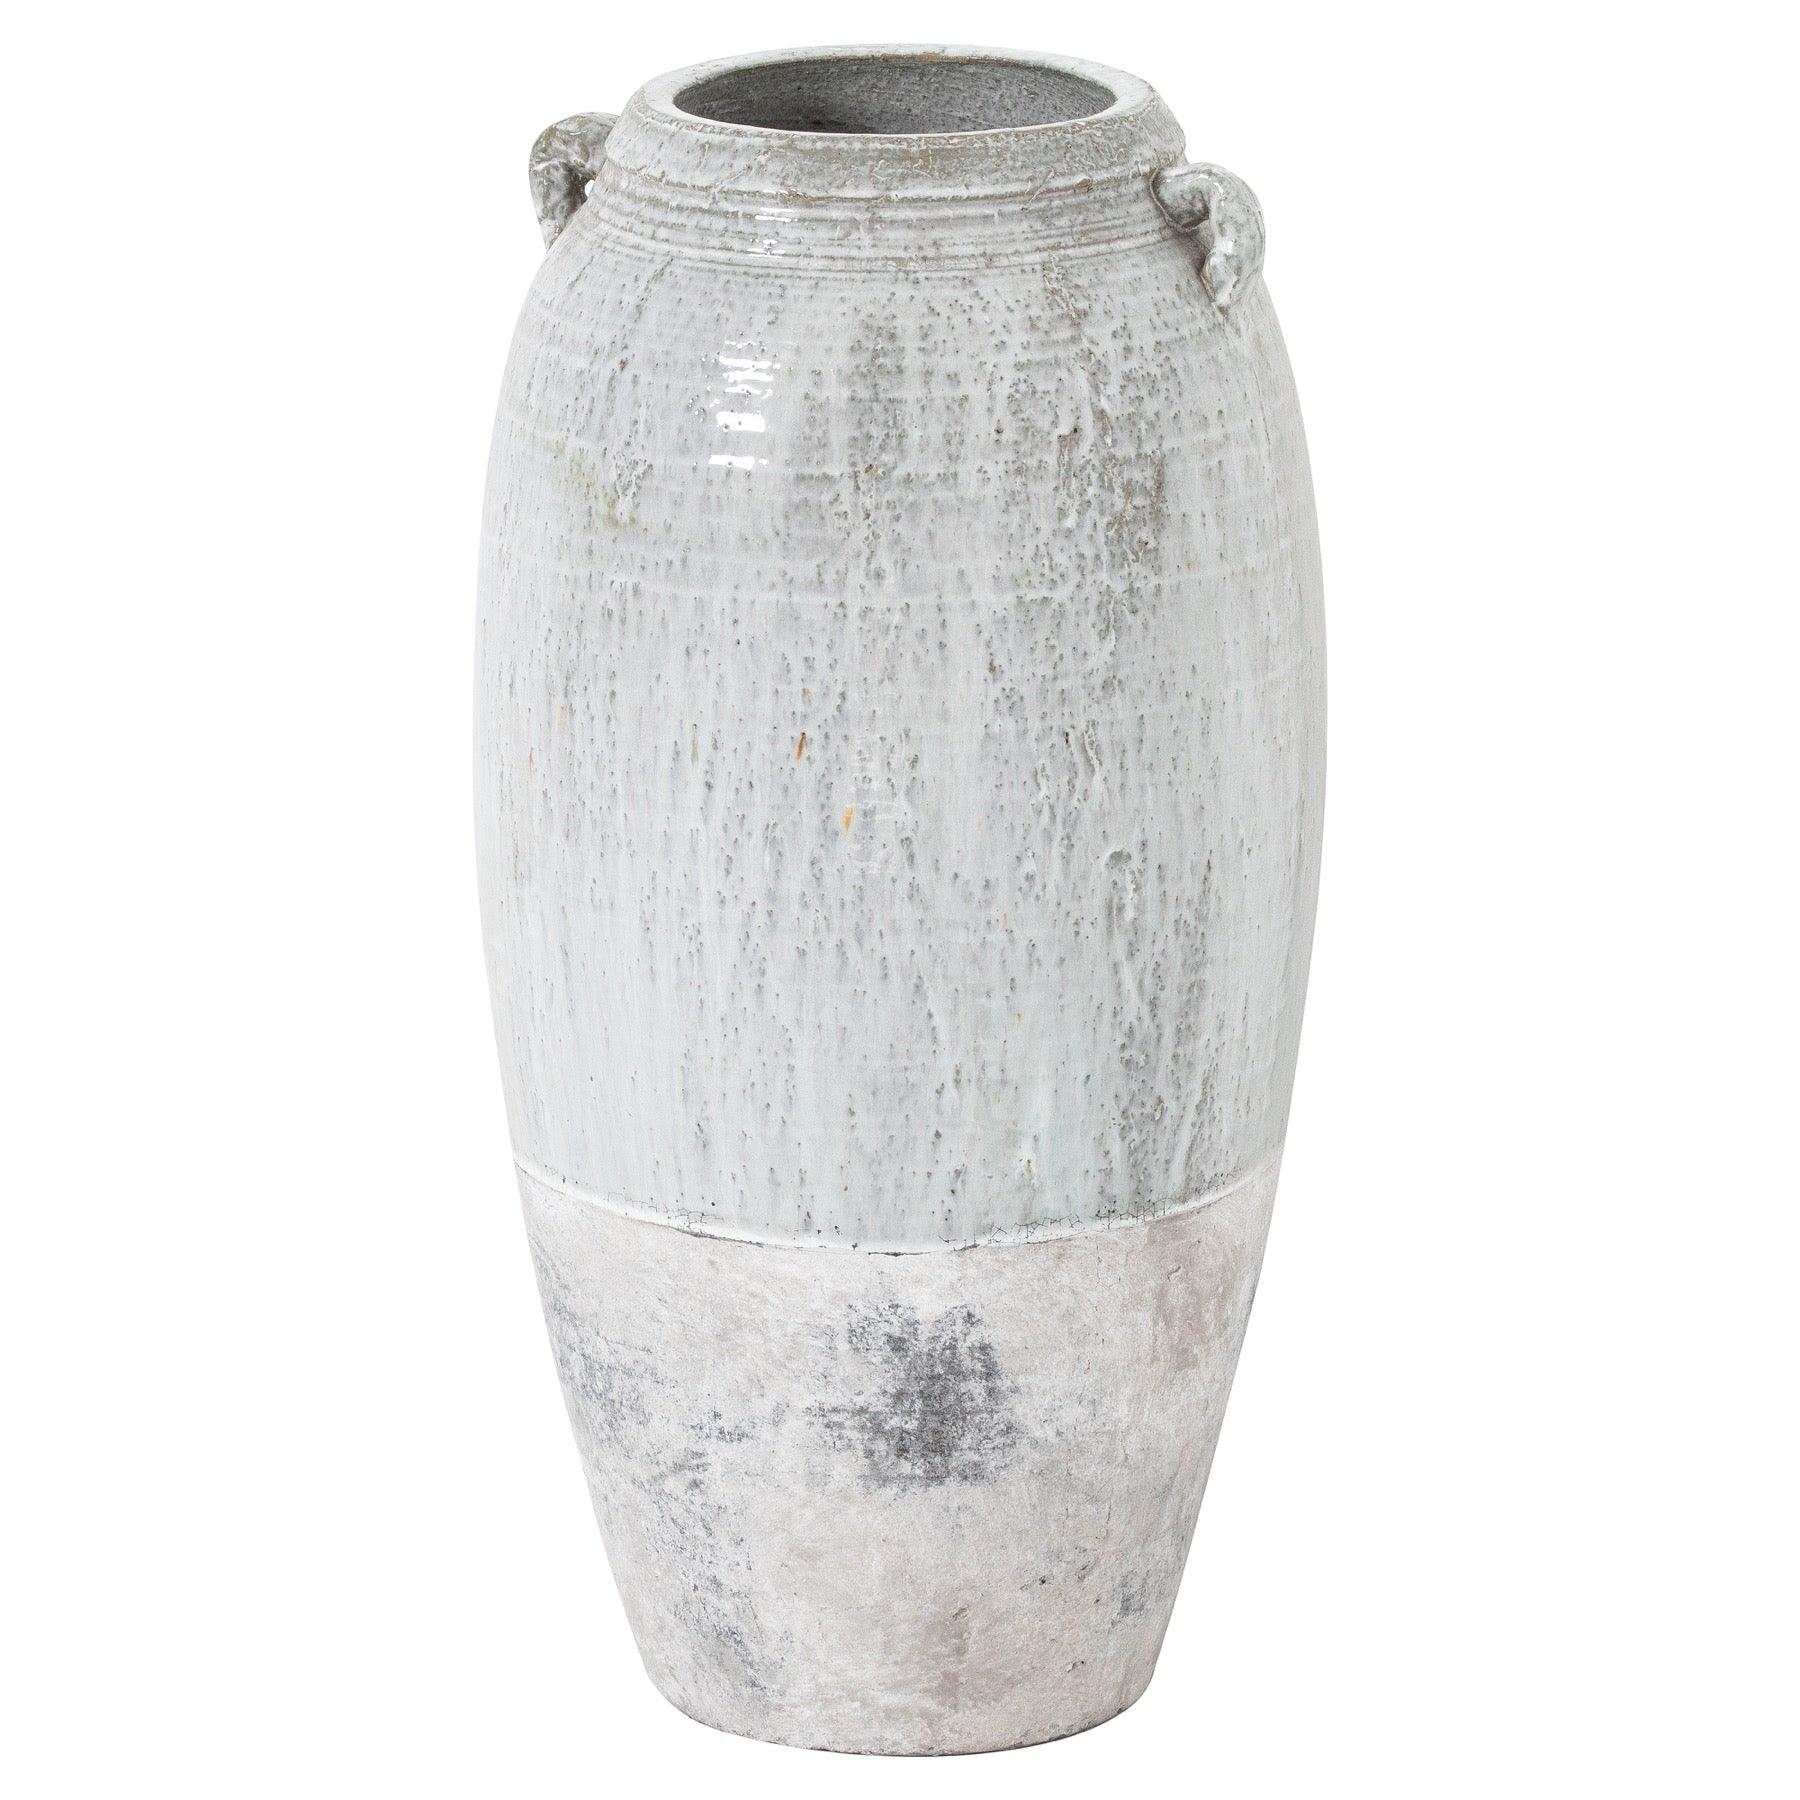 View Large Ceramic Dipped Amphora Vase information